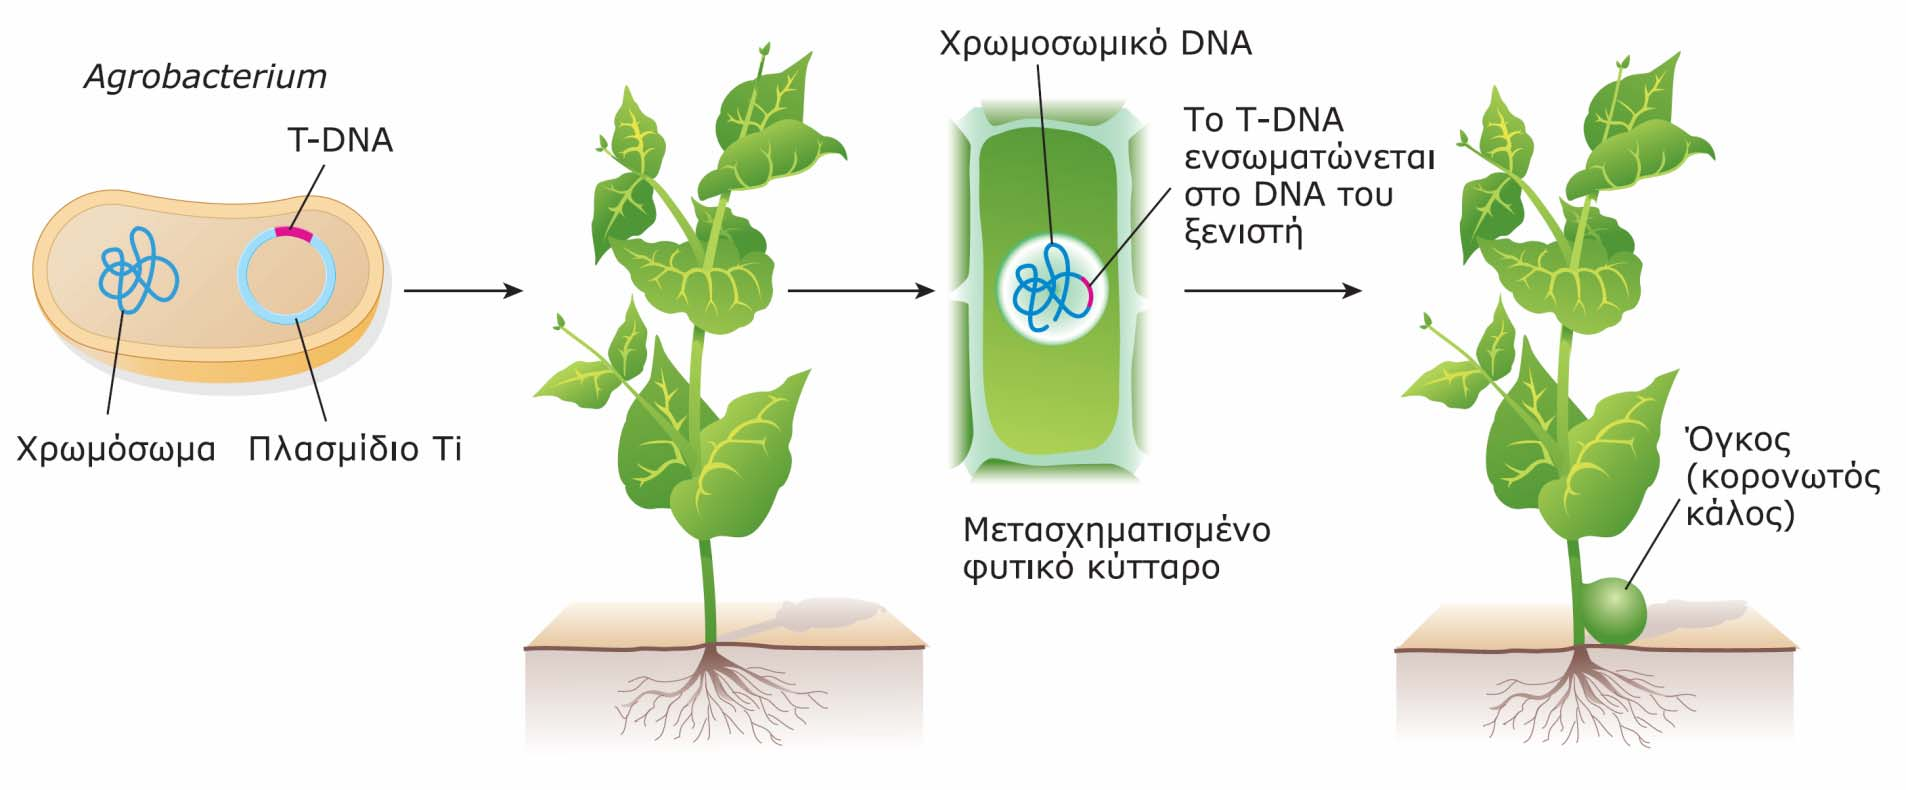 Σχηματισμός όγκων (κάλων) σε φυτά μέσω της μόλυνσής τους με ορισμένα είδη του βακτηρίου Agrobactrerium.